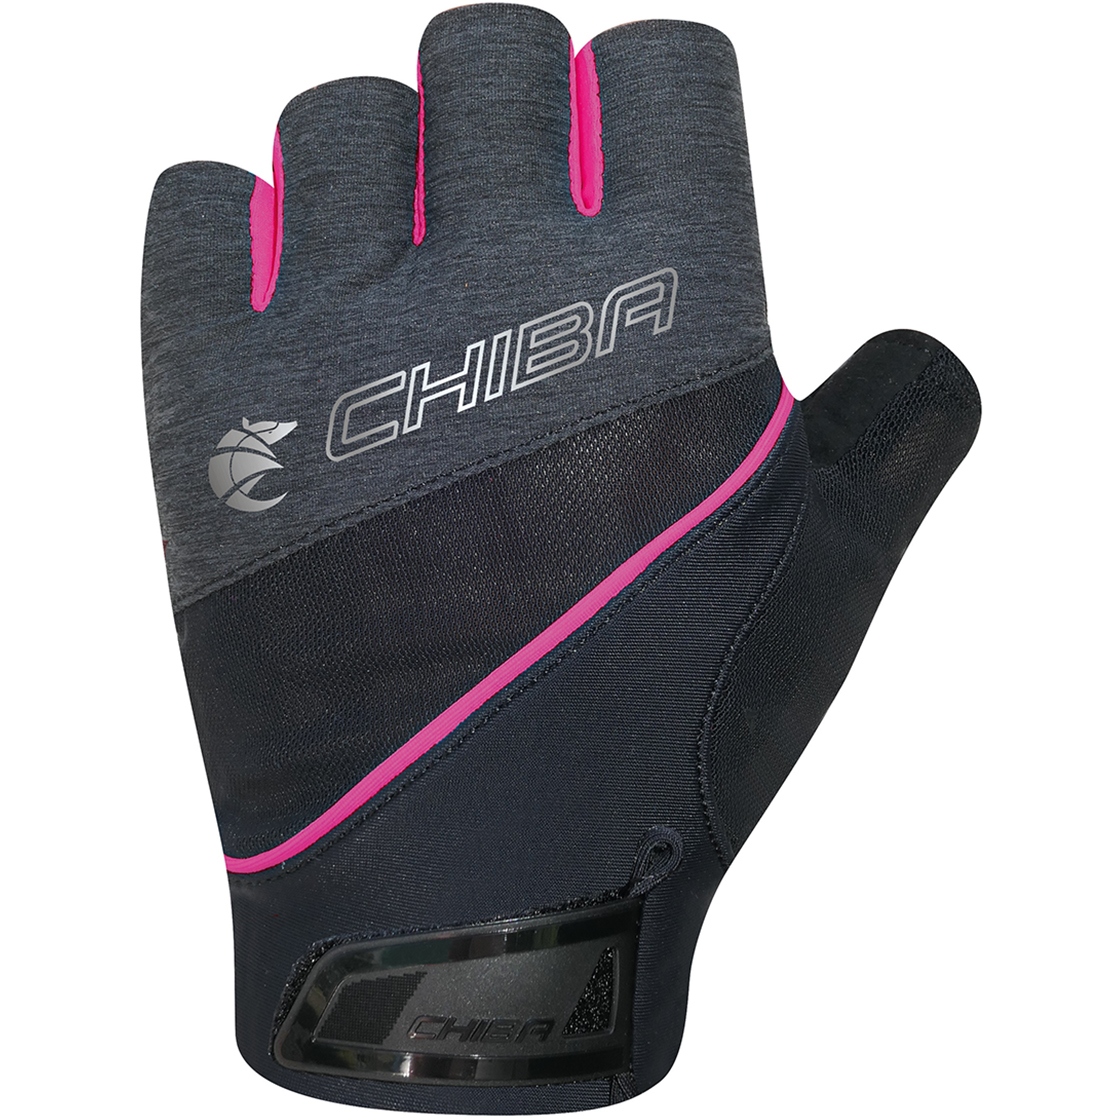 Produktbild von Chiba Gel Premium III Kurzfinger-Handschuhe Damen - schwarz/pink